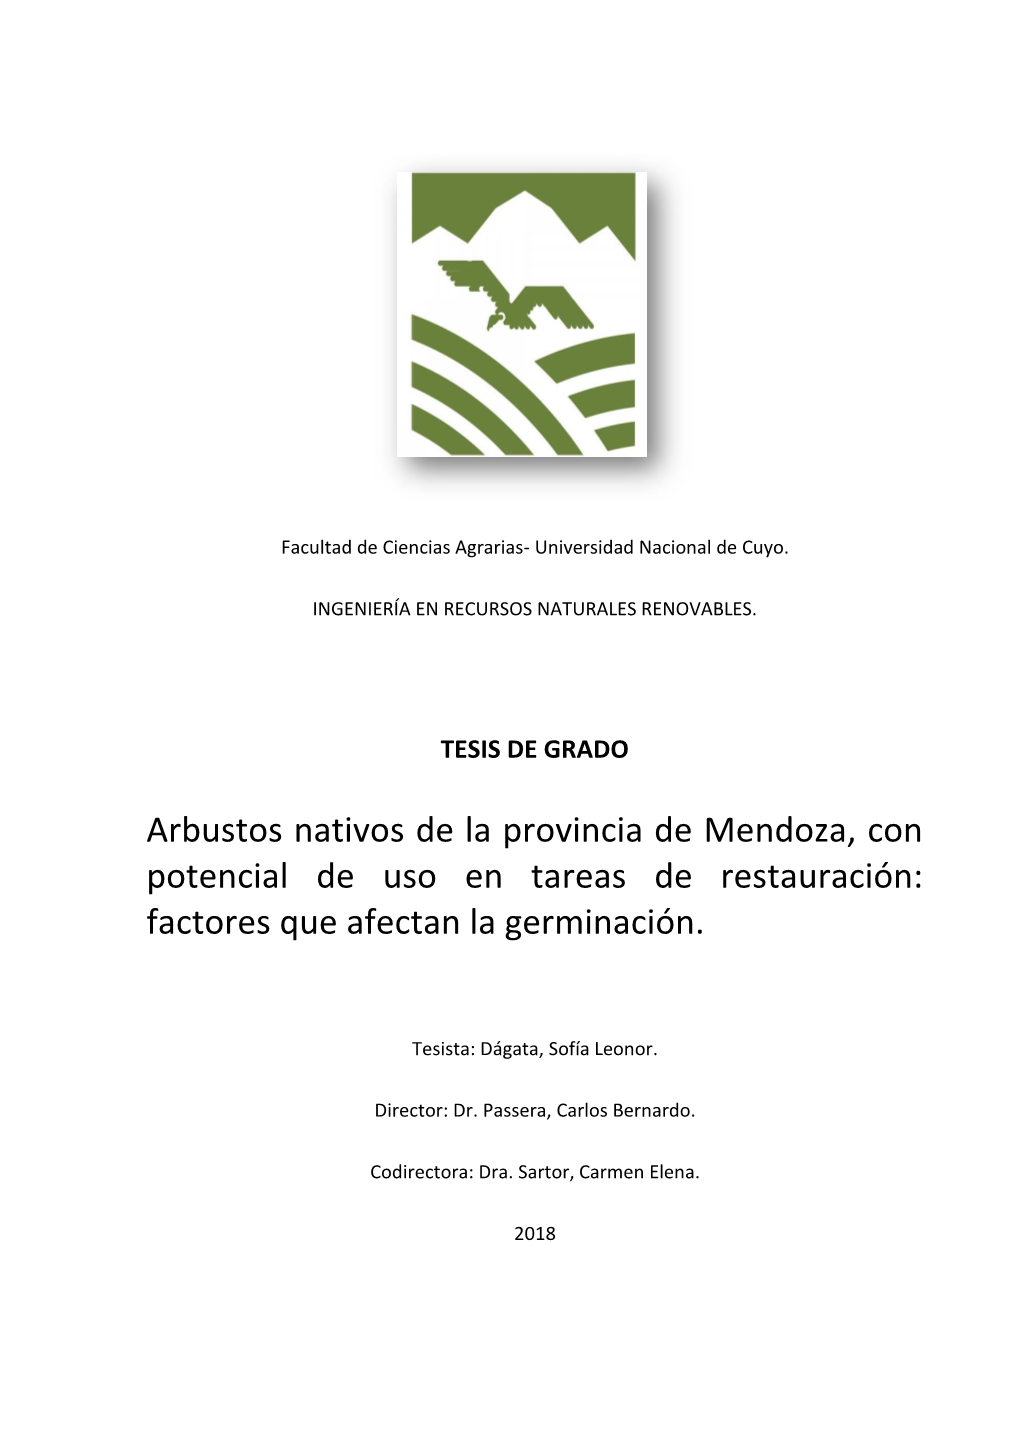 Arbustos Nativos De La Provincia De Mendoza, Con Potencial De Uso En Tareas De Restauración: Factores Que Afectan La Germinación